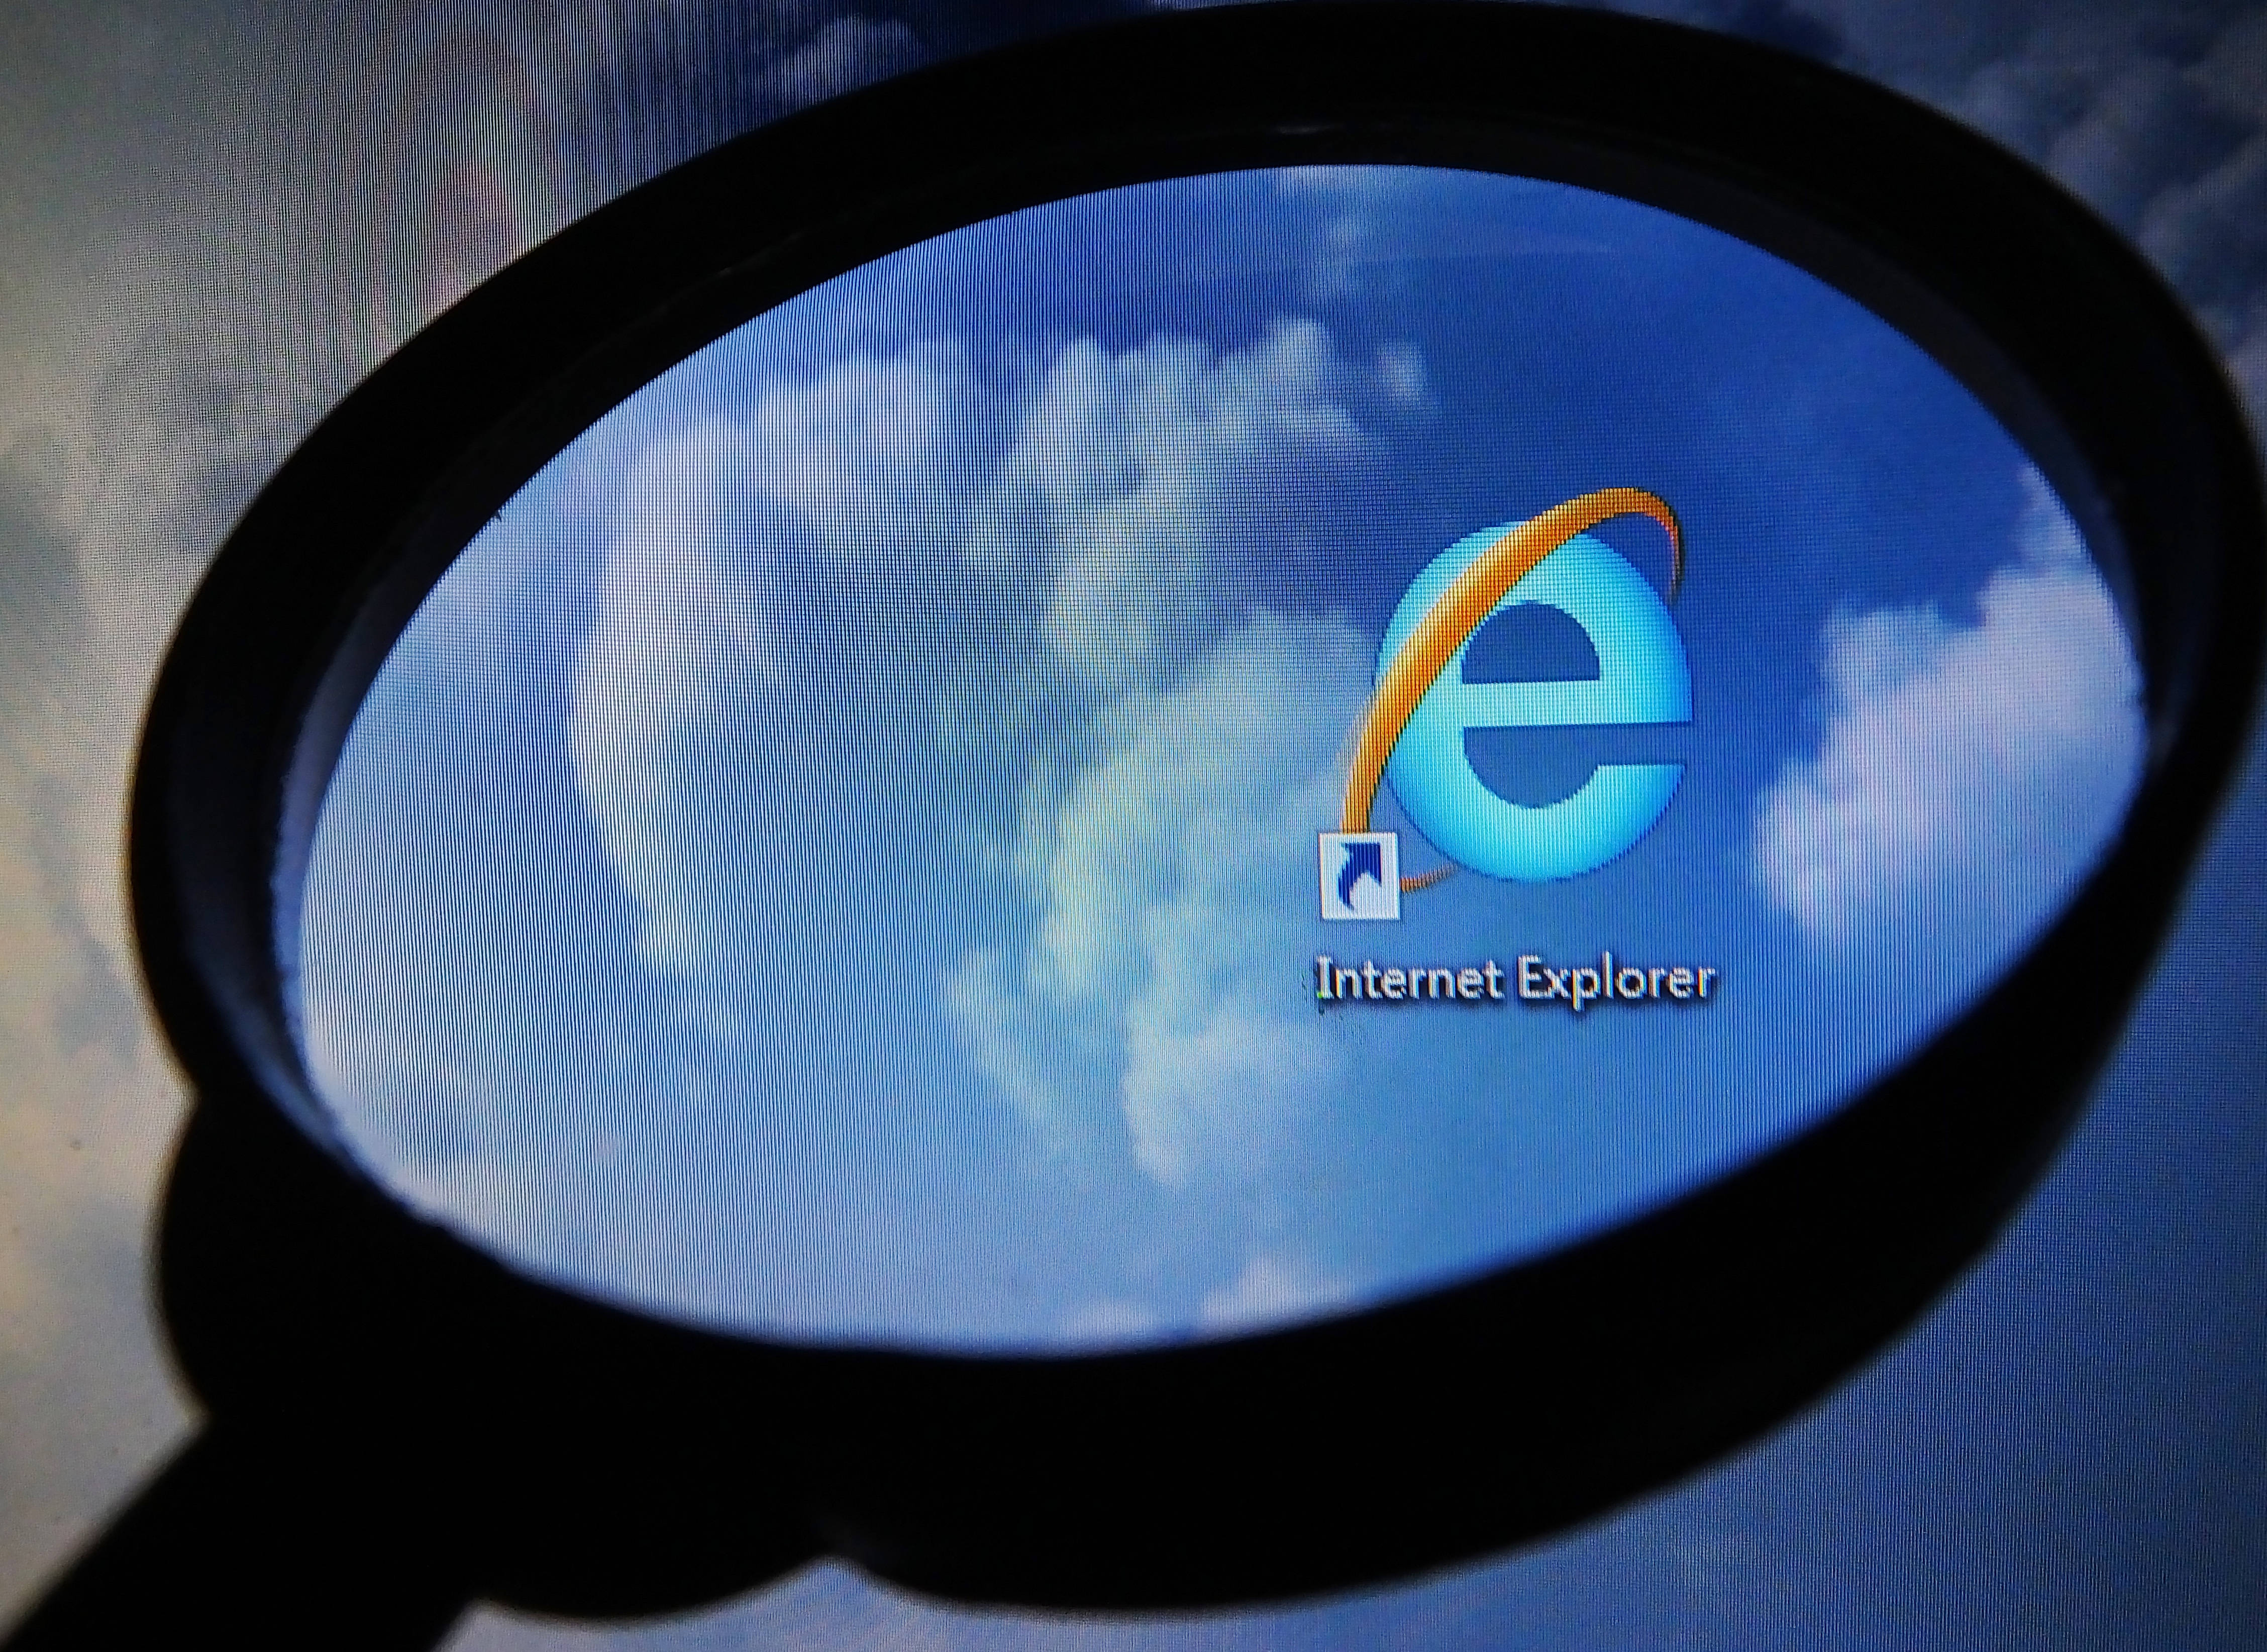 微软ie浏览器将于6月16日退役,由edge浏览器取代